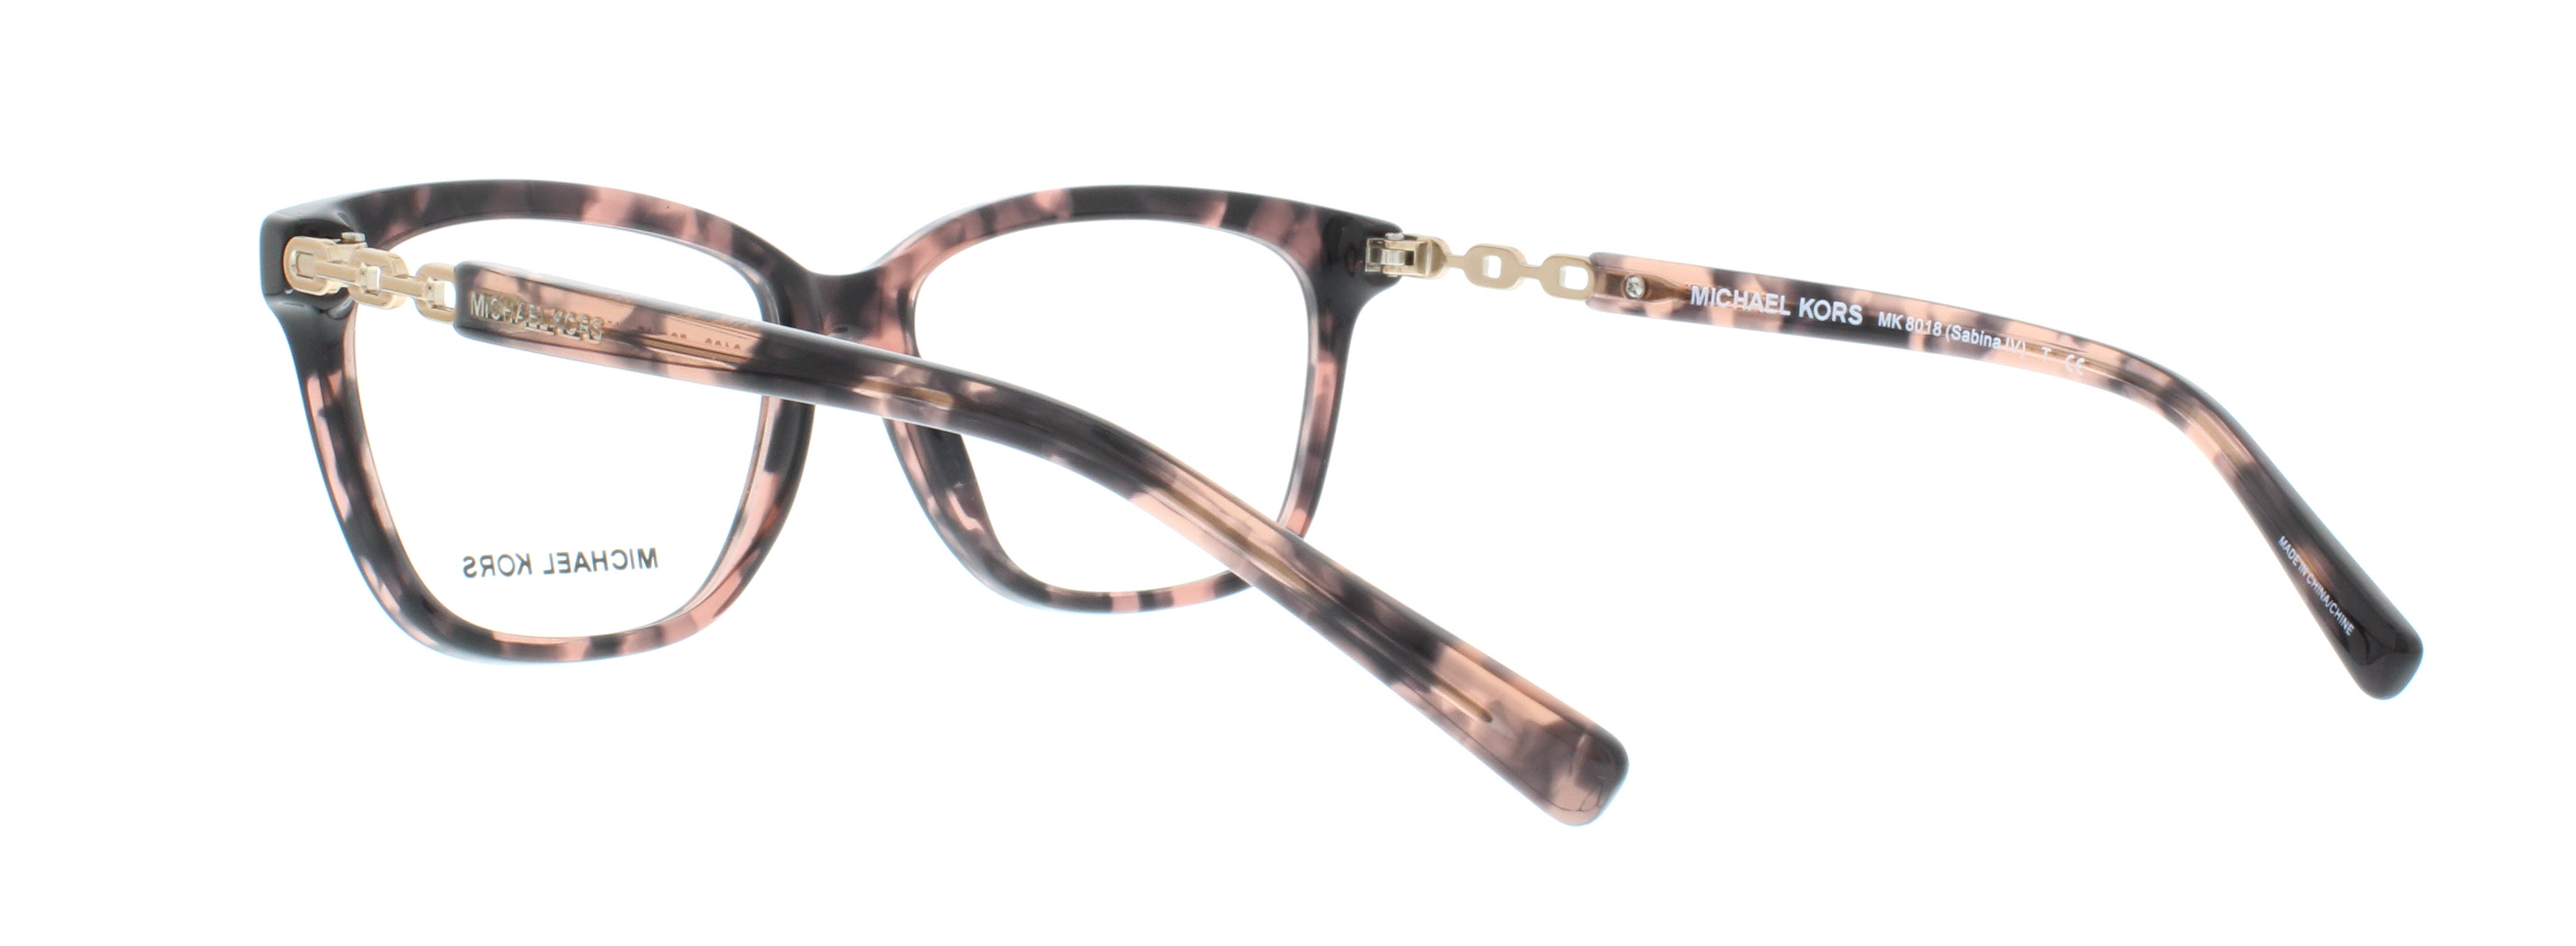 Designer Frames Outlet. Michael Kors Eyeglasses MK8018 Sabina IV